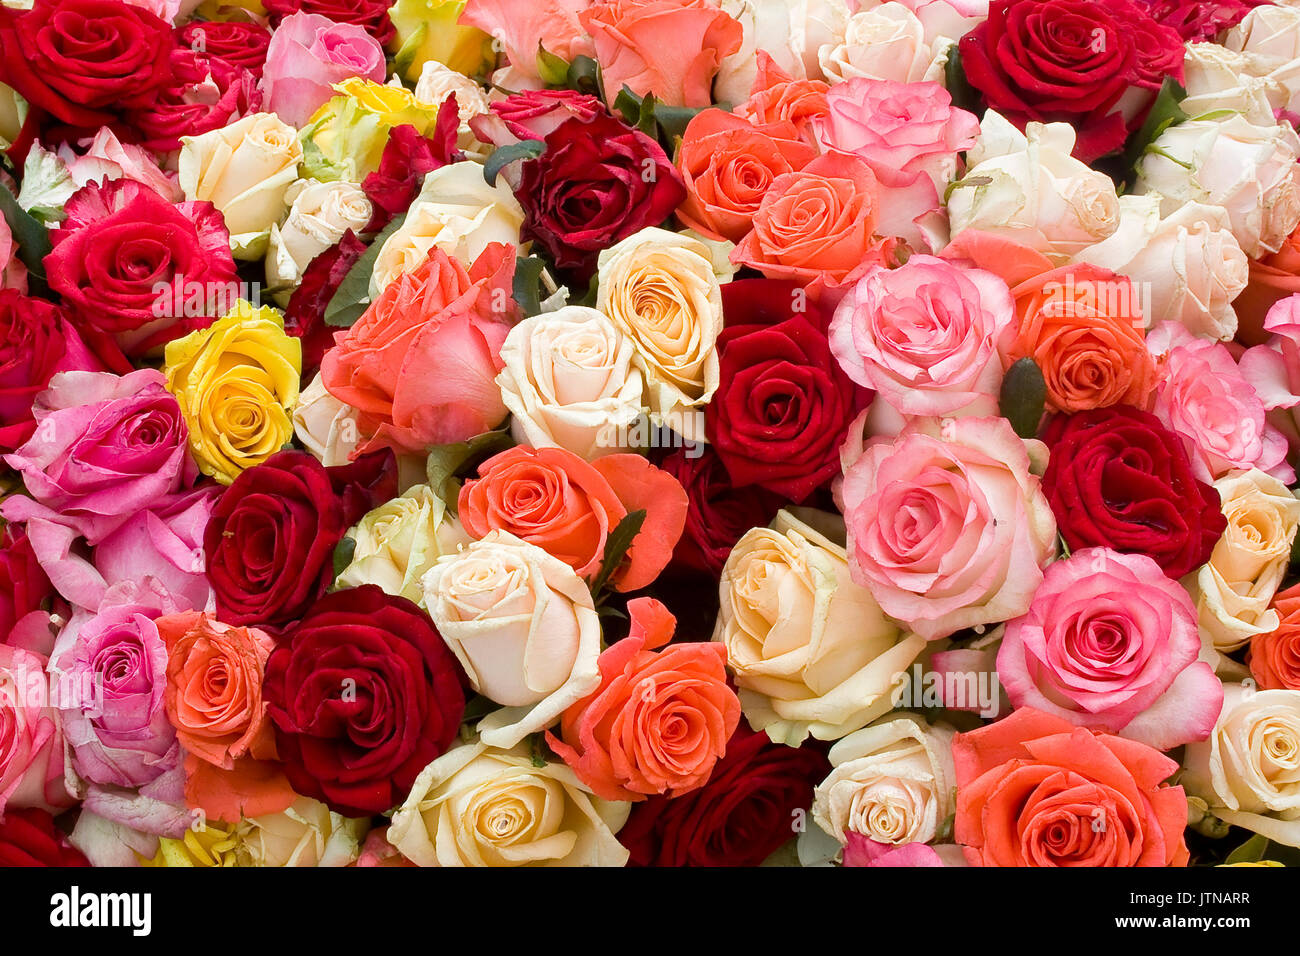 Rose colorate immagini e fotografie stock ad alta risoluzione - Alamy